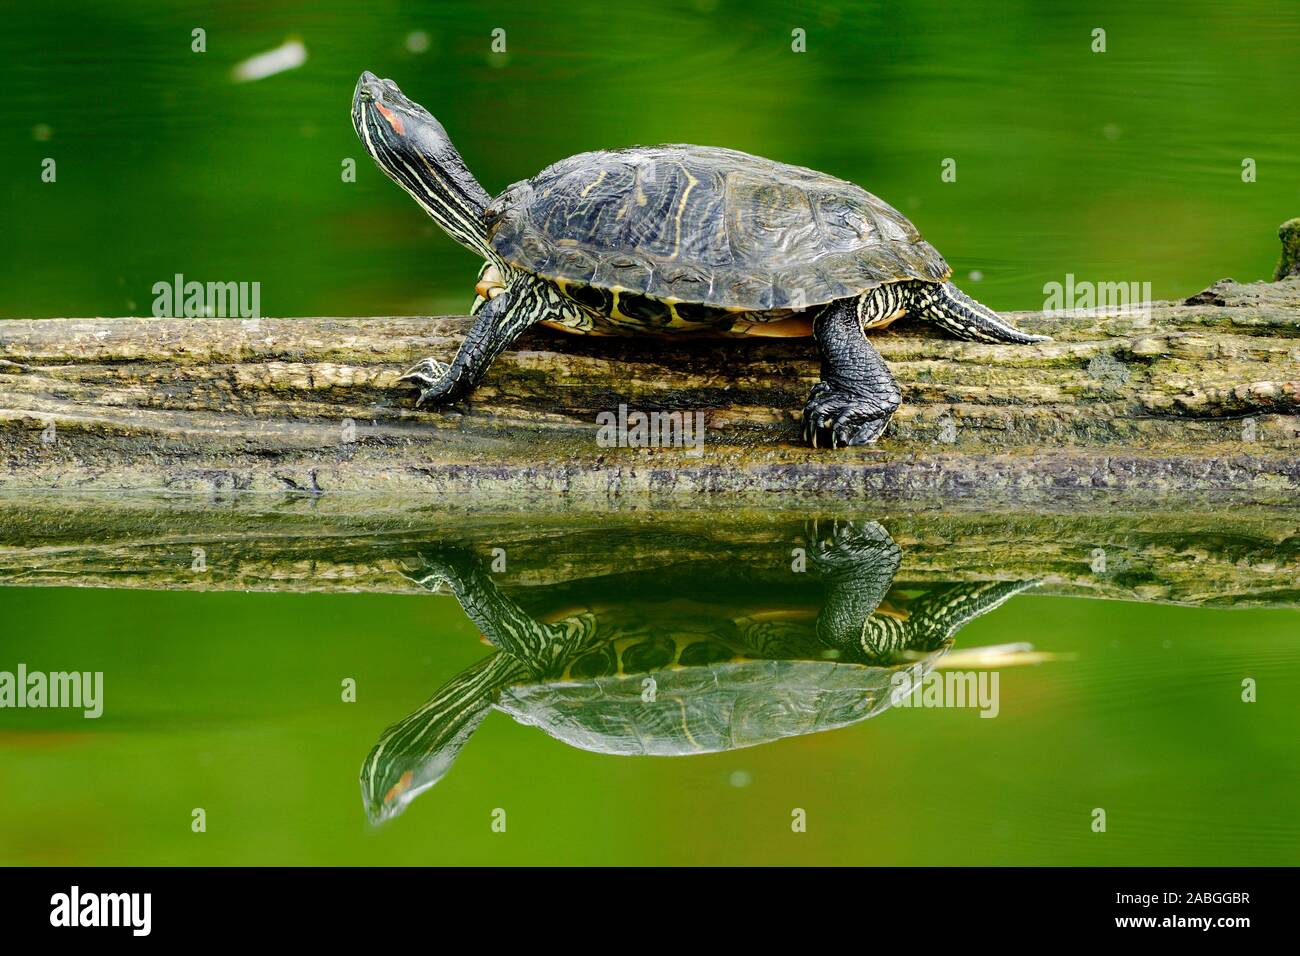 Tiere, Amphibien, Schildkröte, wasserschildkröte, Stock Photo